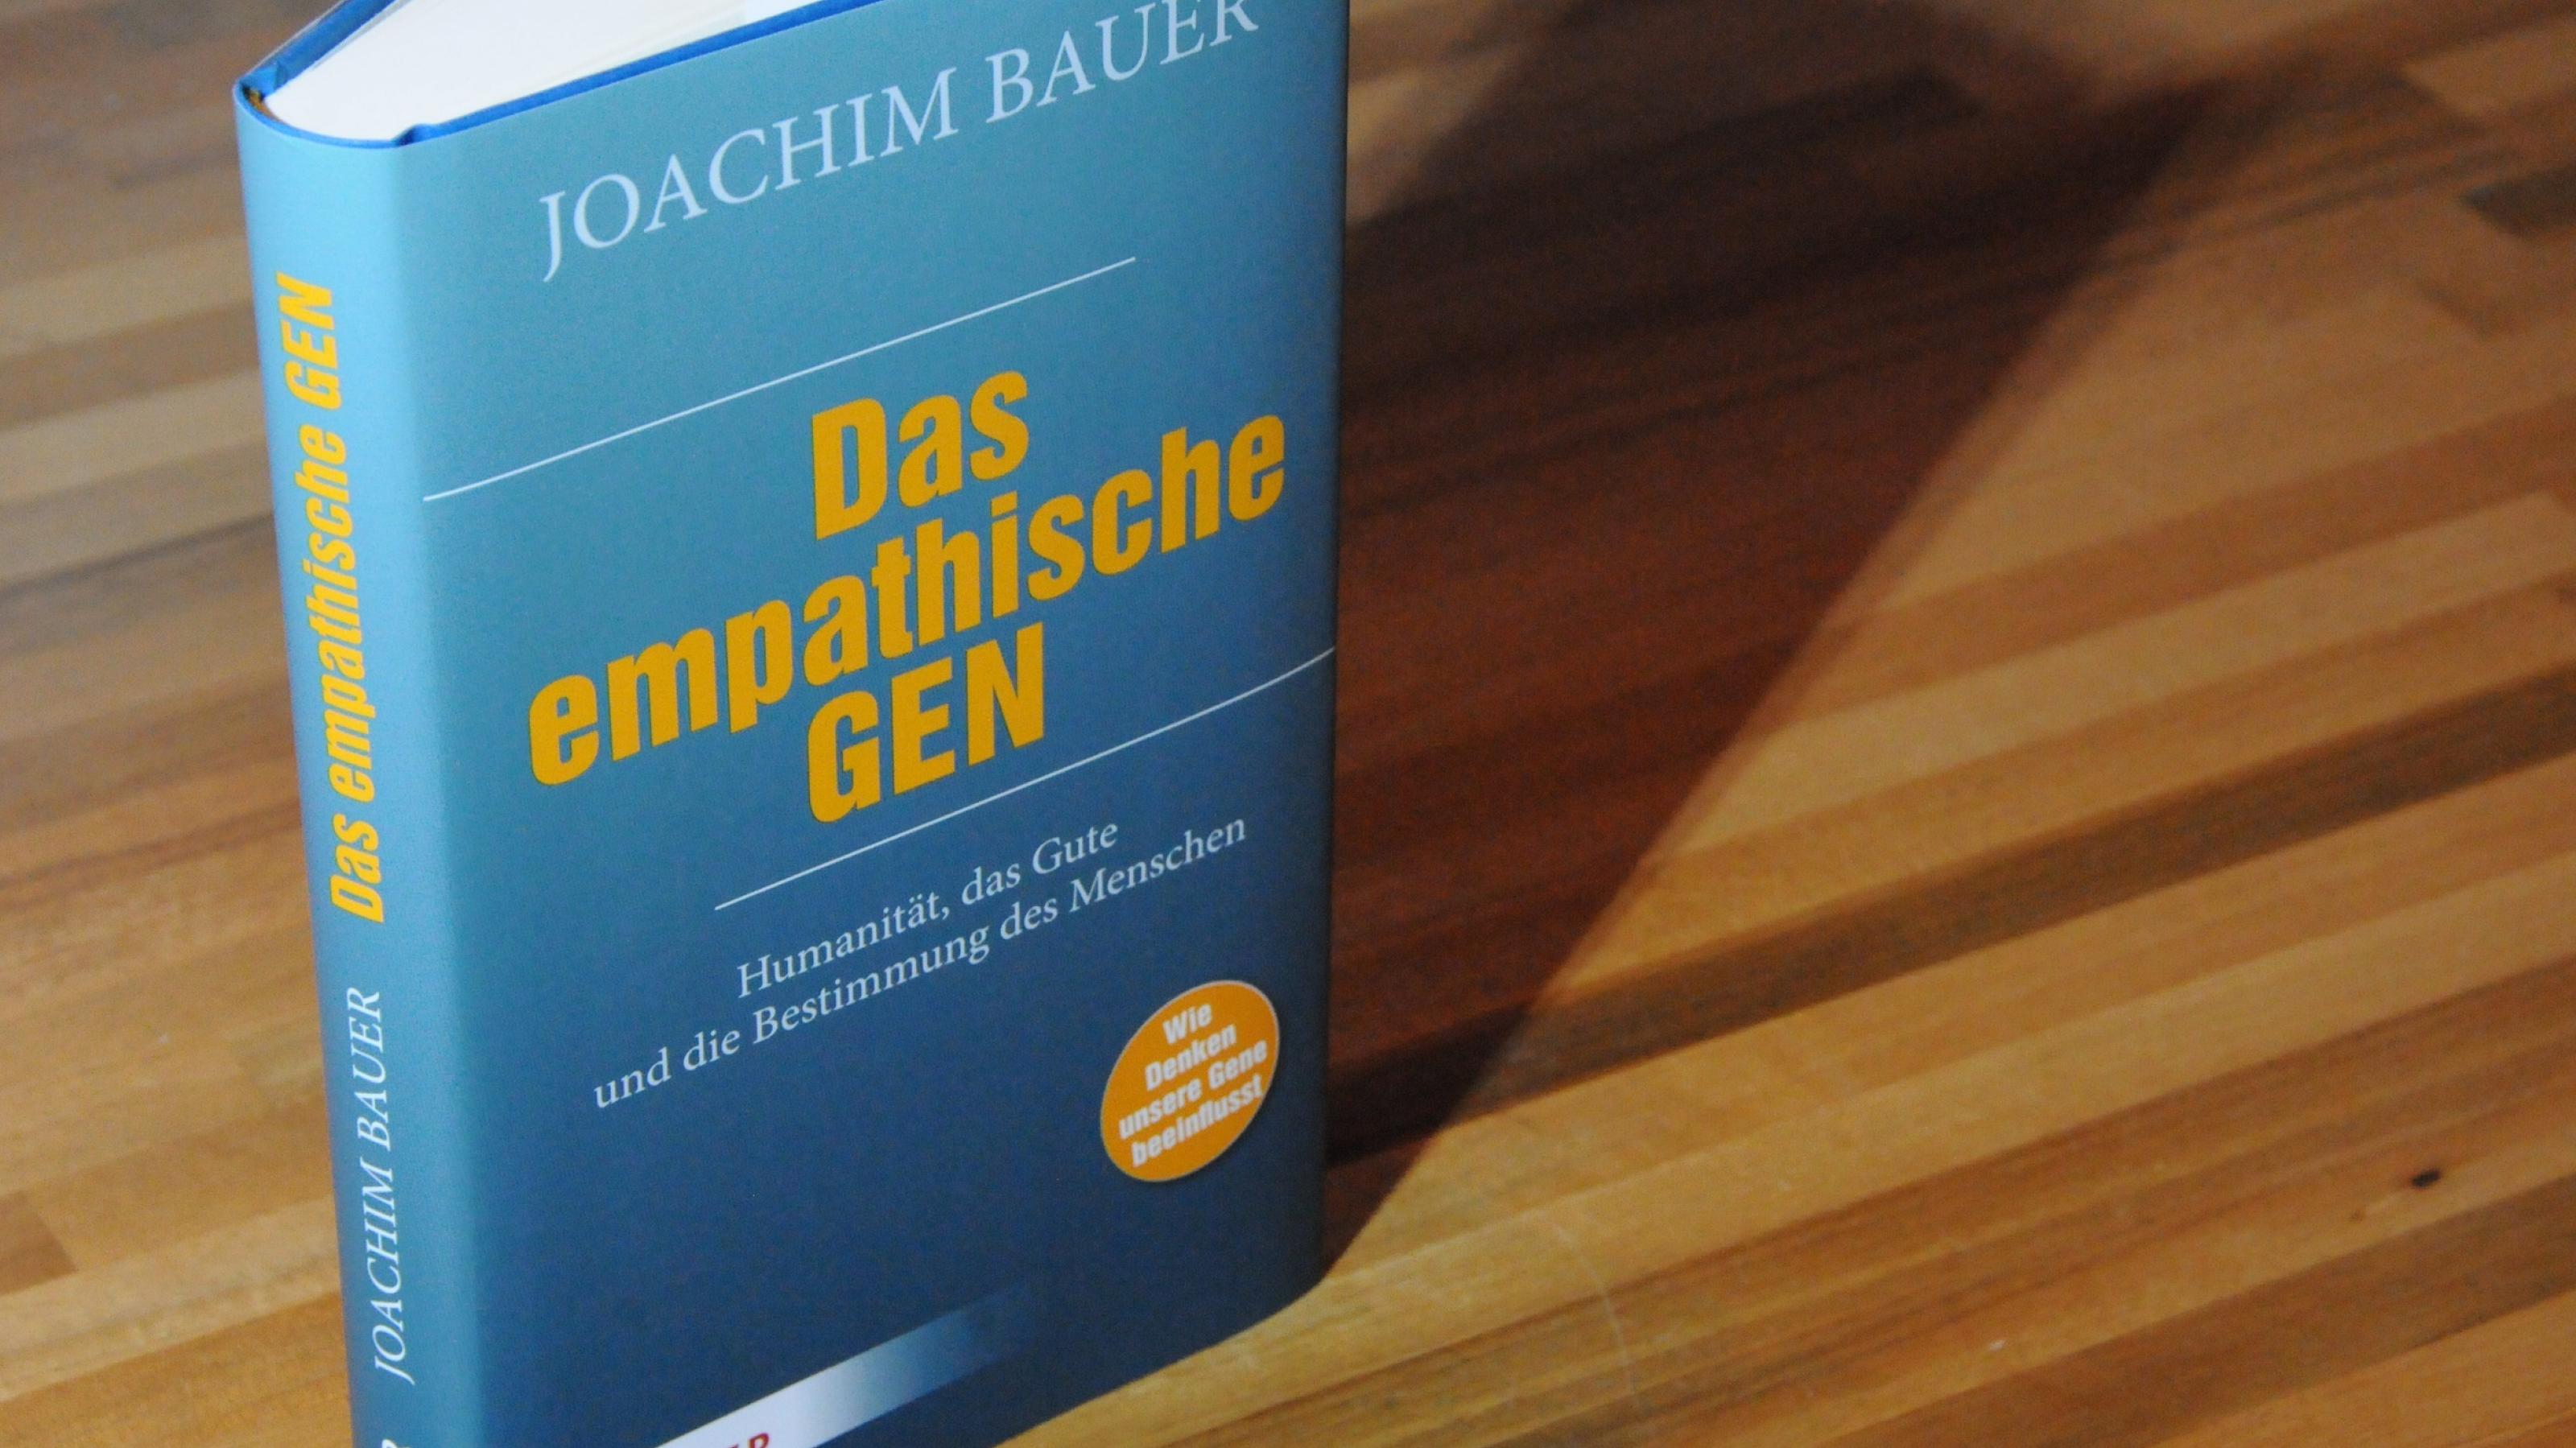 Buchcover: Das empathische Gen. Autor: Joachim Bauer. Herder Verlag